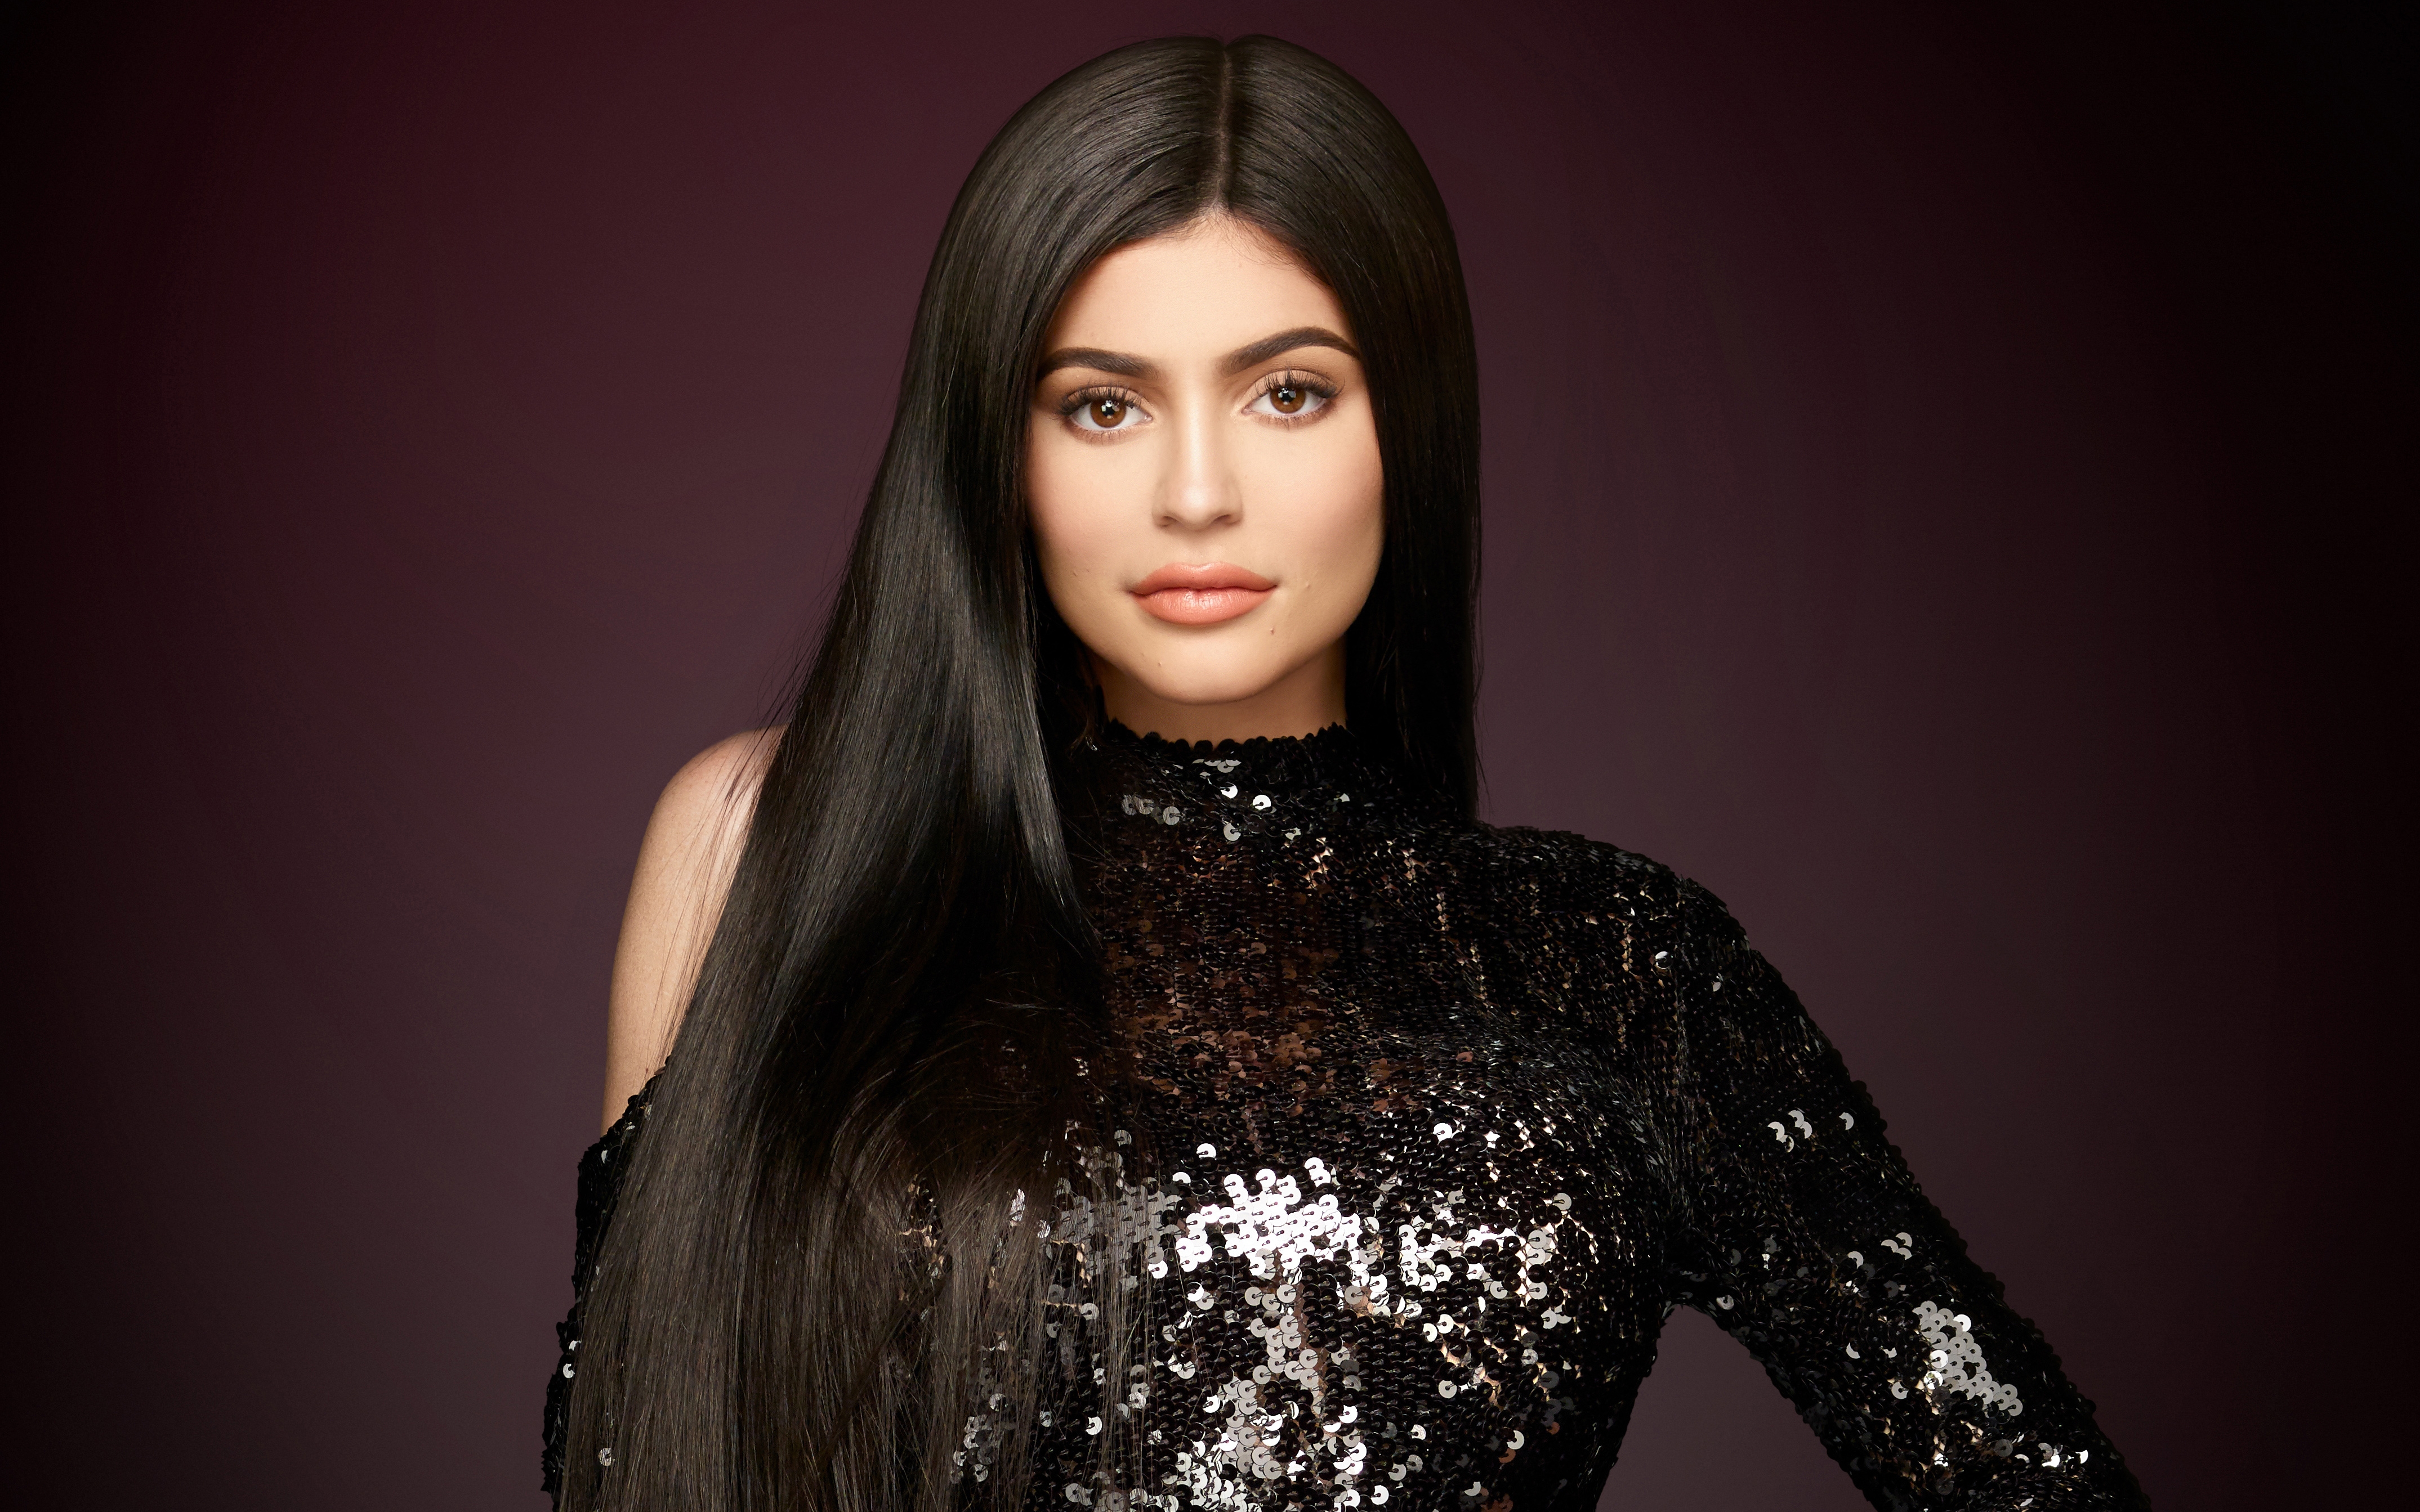 Wallpapers Kylie Jenner model long hair on the desktop